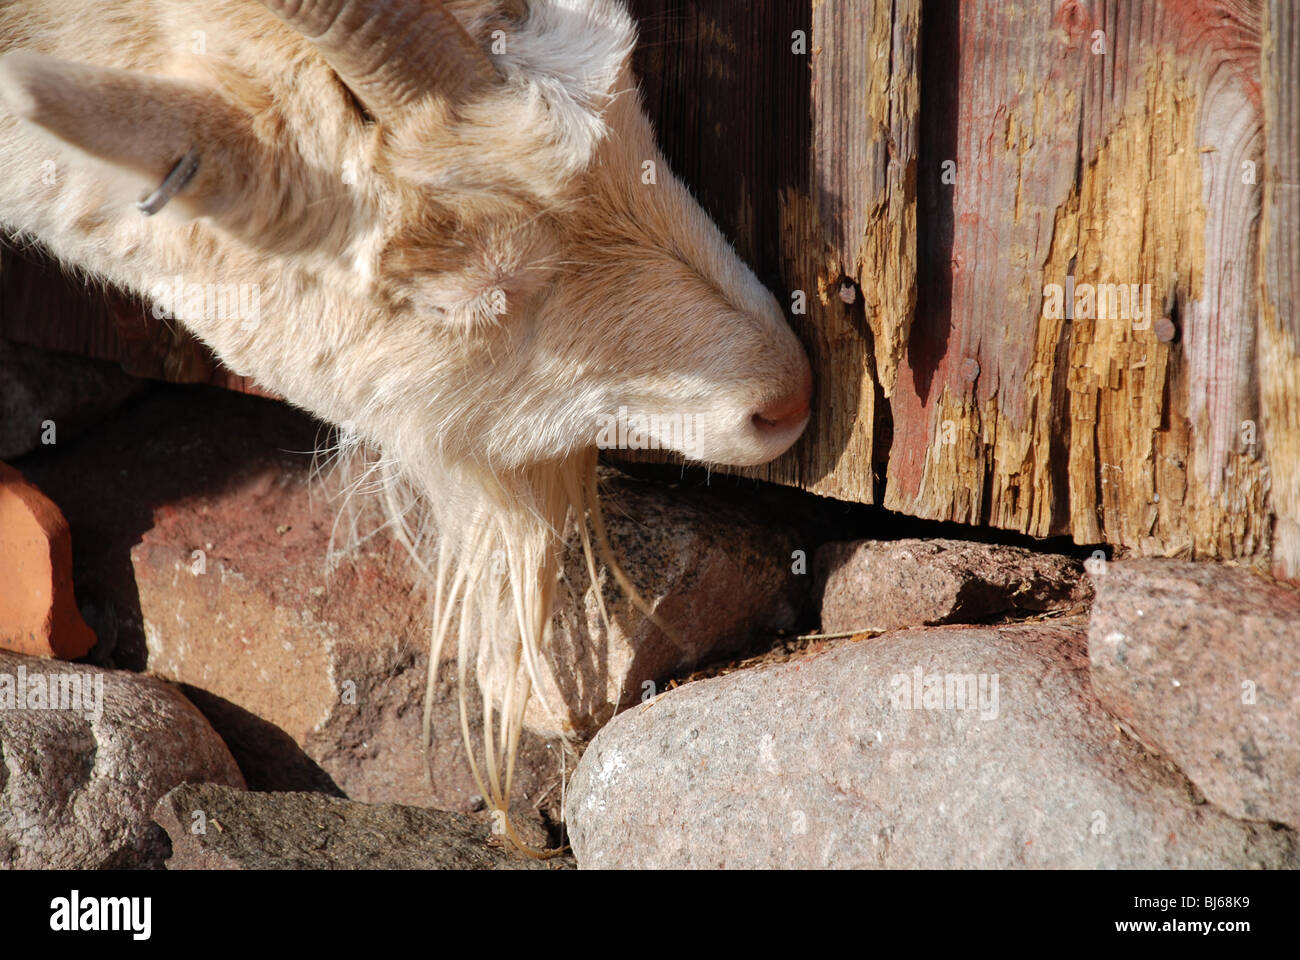 Goat eating barn Stock Photo